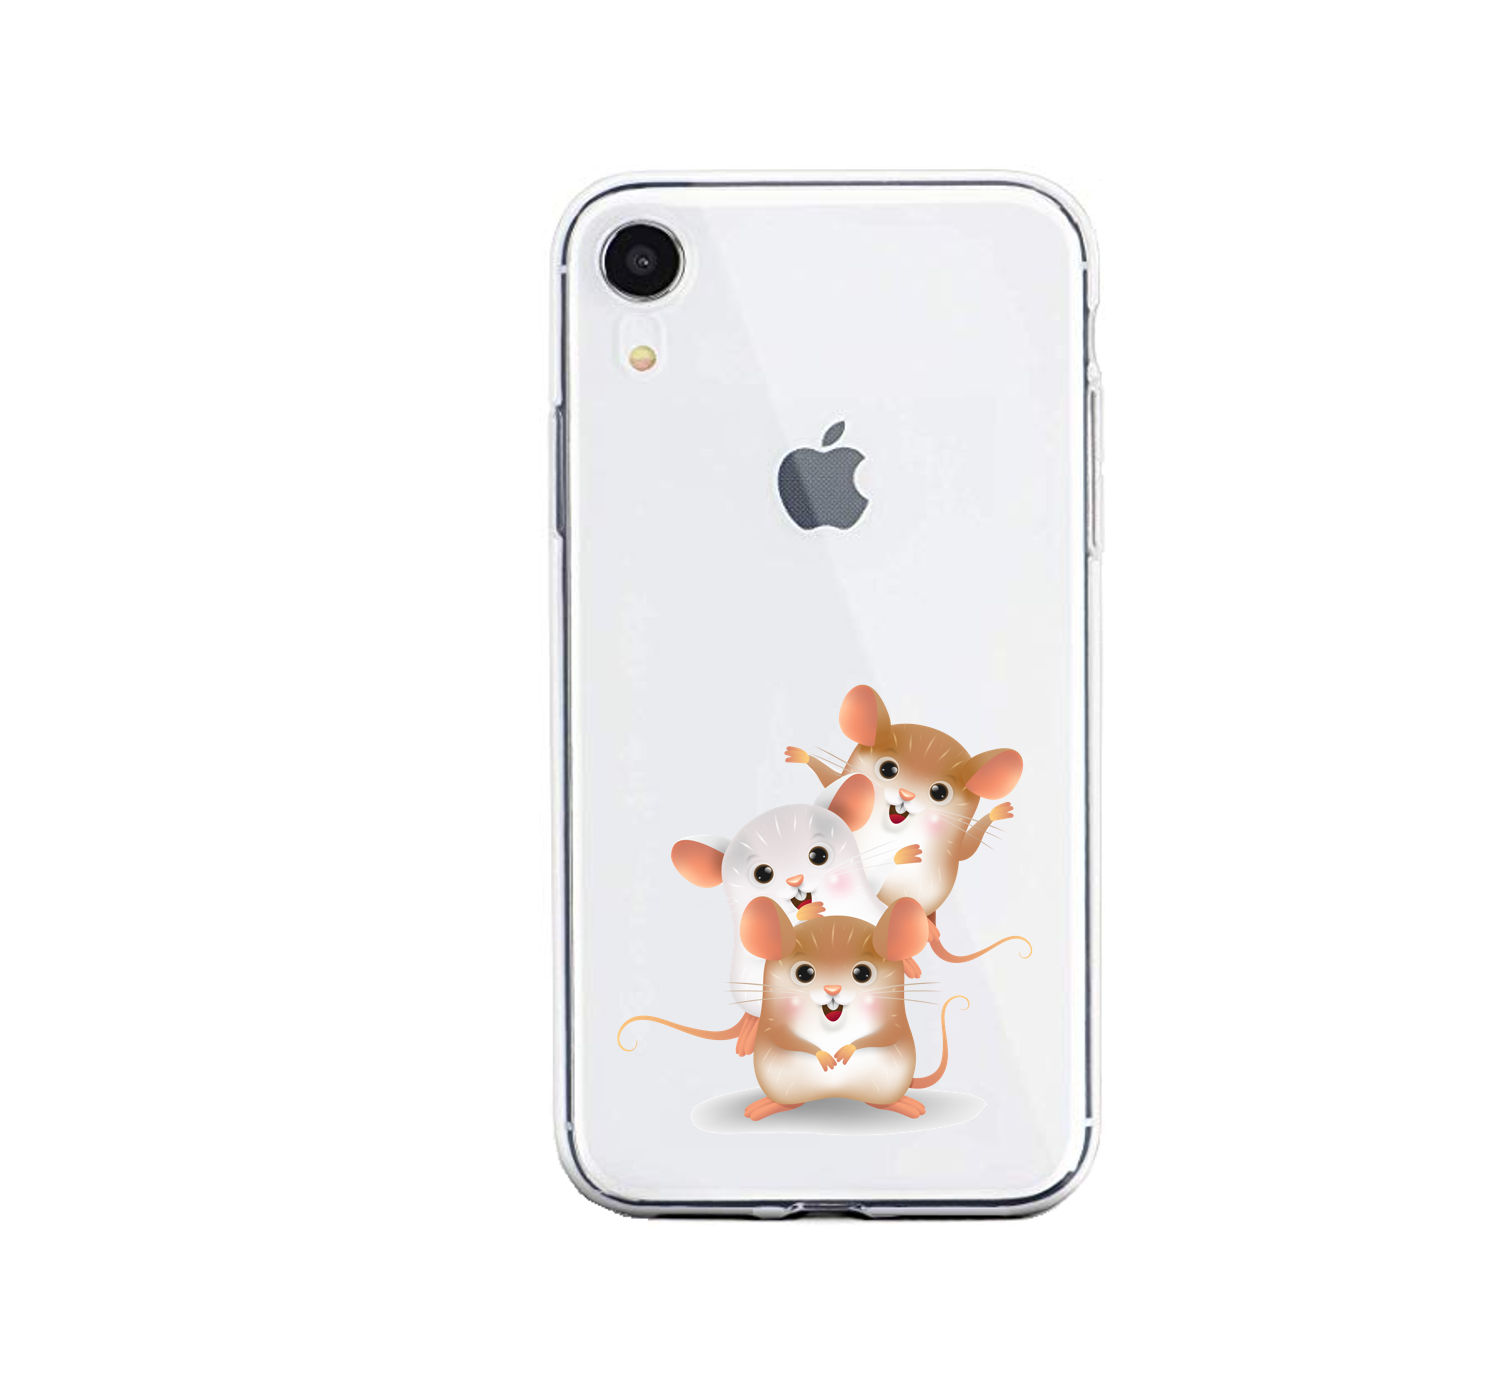 945 Zachte voeten Skiën Apple Iphone hamster siliconen hoesjes transparant - 3 hamsters - Apple -  Nieuwetelefoonhoesjes.nl